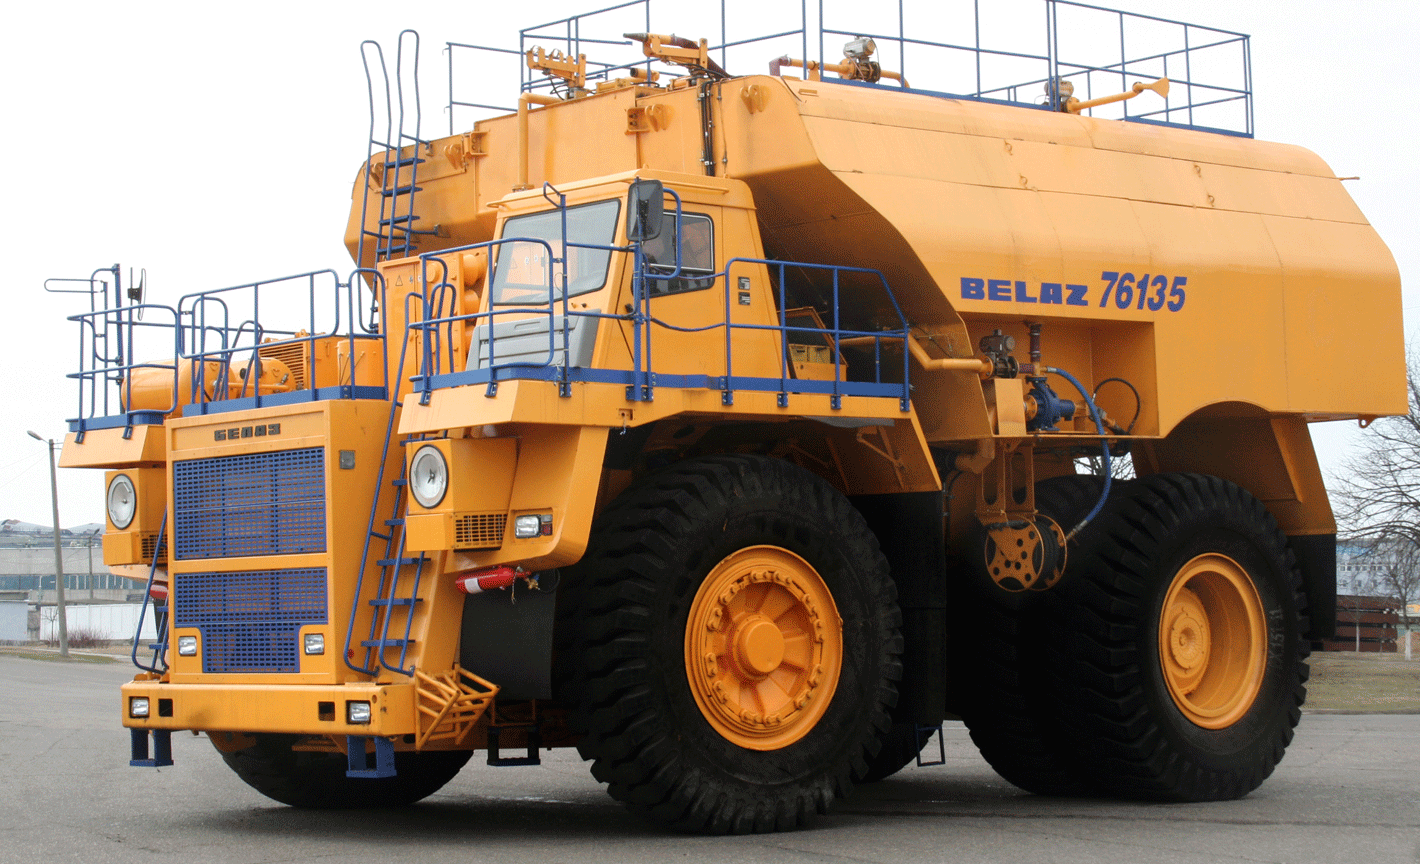 BELAZ-7613 water sprinkling vehicles